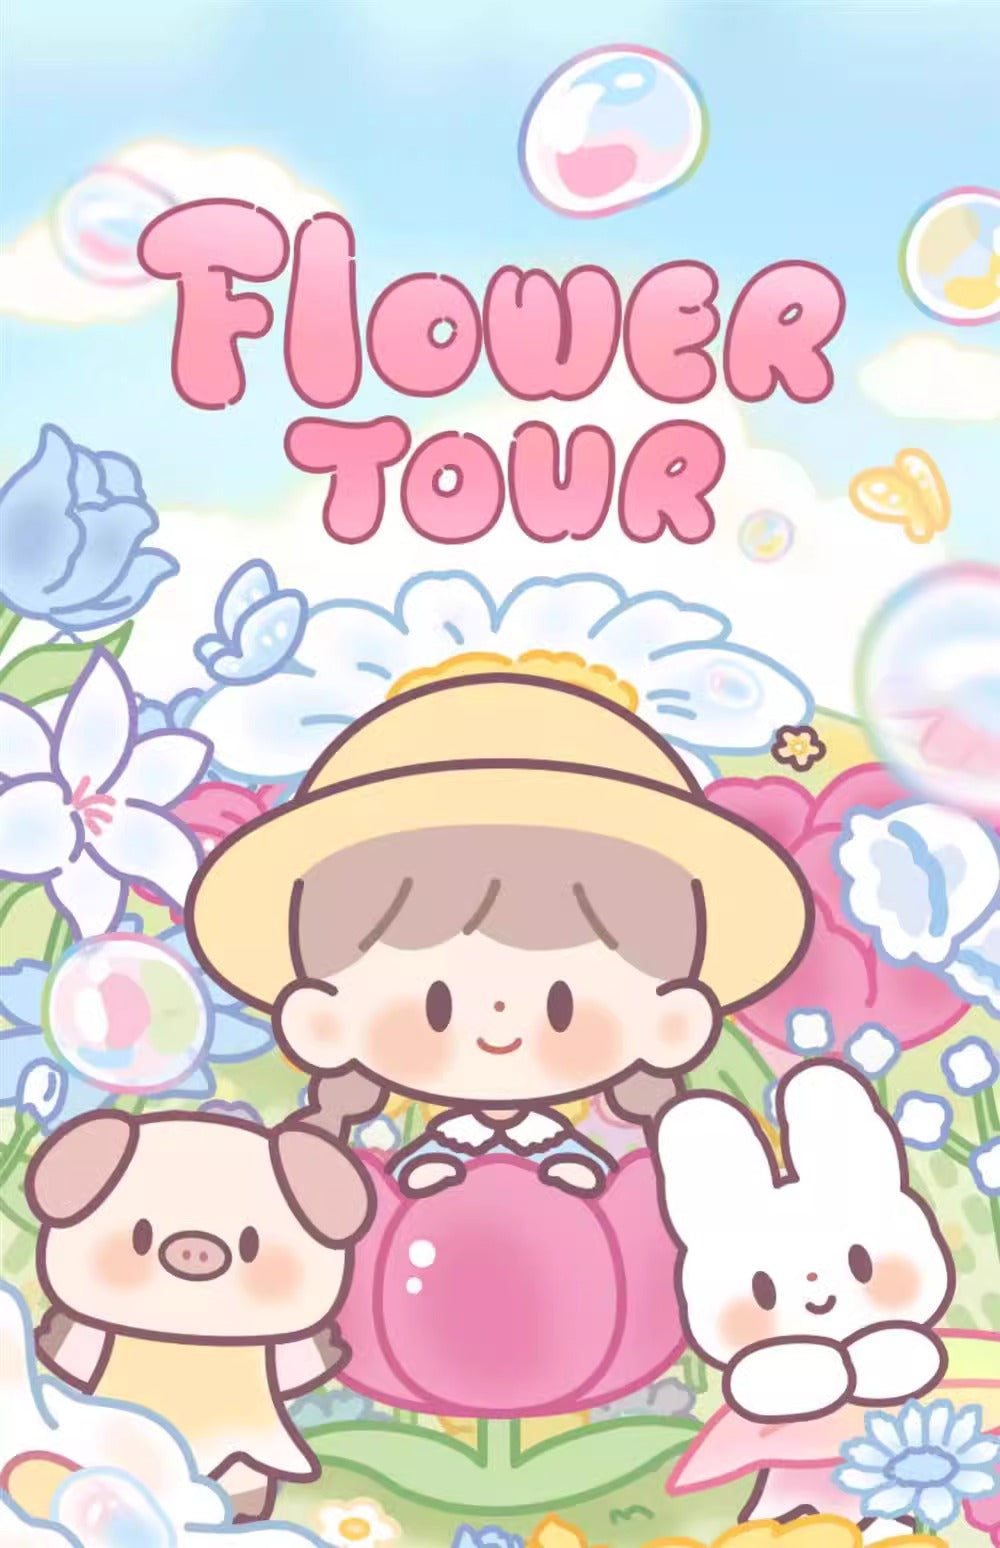 [F.UN] ZZOTON - Flower Tour Series Blind Box